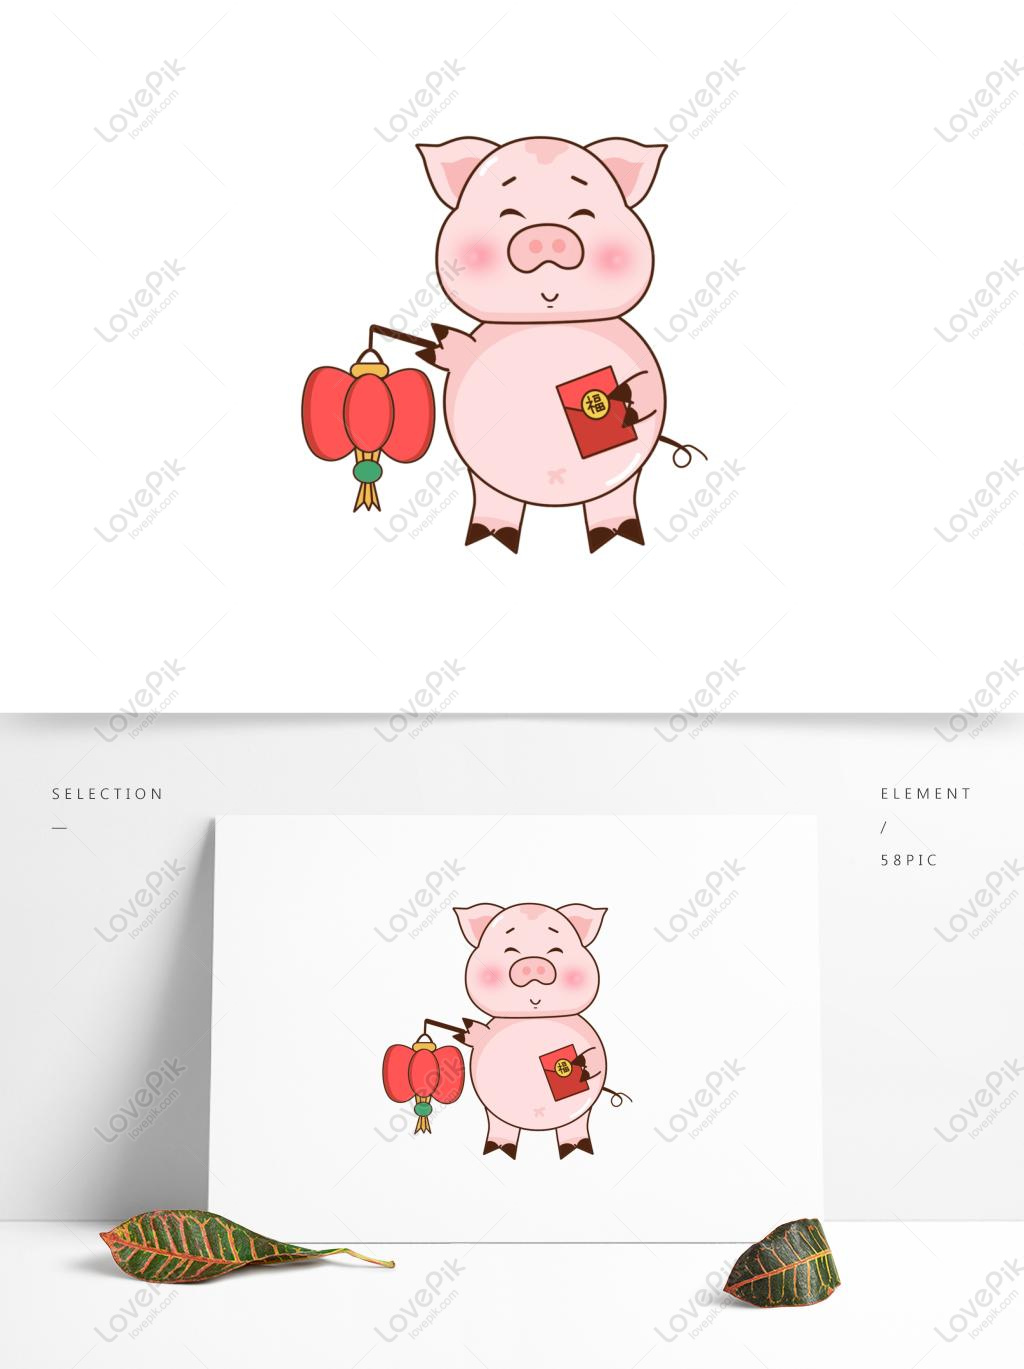 Khám phá hình ảnh chú lợn hoạt hình đáng yêu nhất mọi thời đại! Đáng yêu, hài hước và đầy màu sắc, chúng tôi chắc chắn rằng bạn sẽ yêu thích chú lợn này từ những giây đầu tiên!